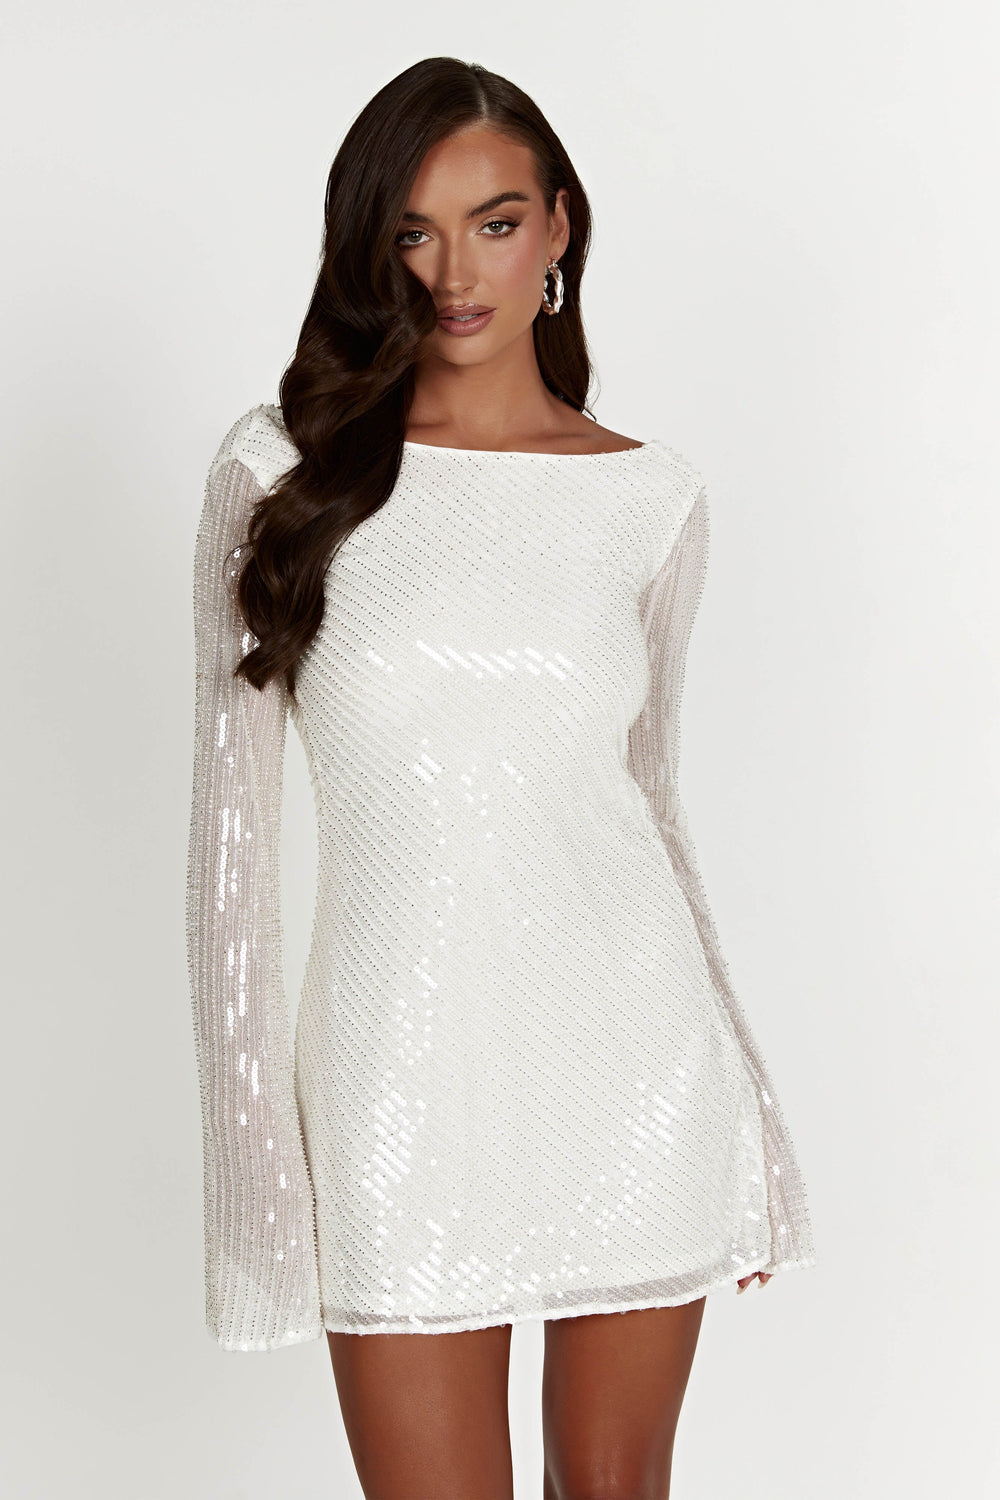 Nala Sequin Mini Dress - White